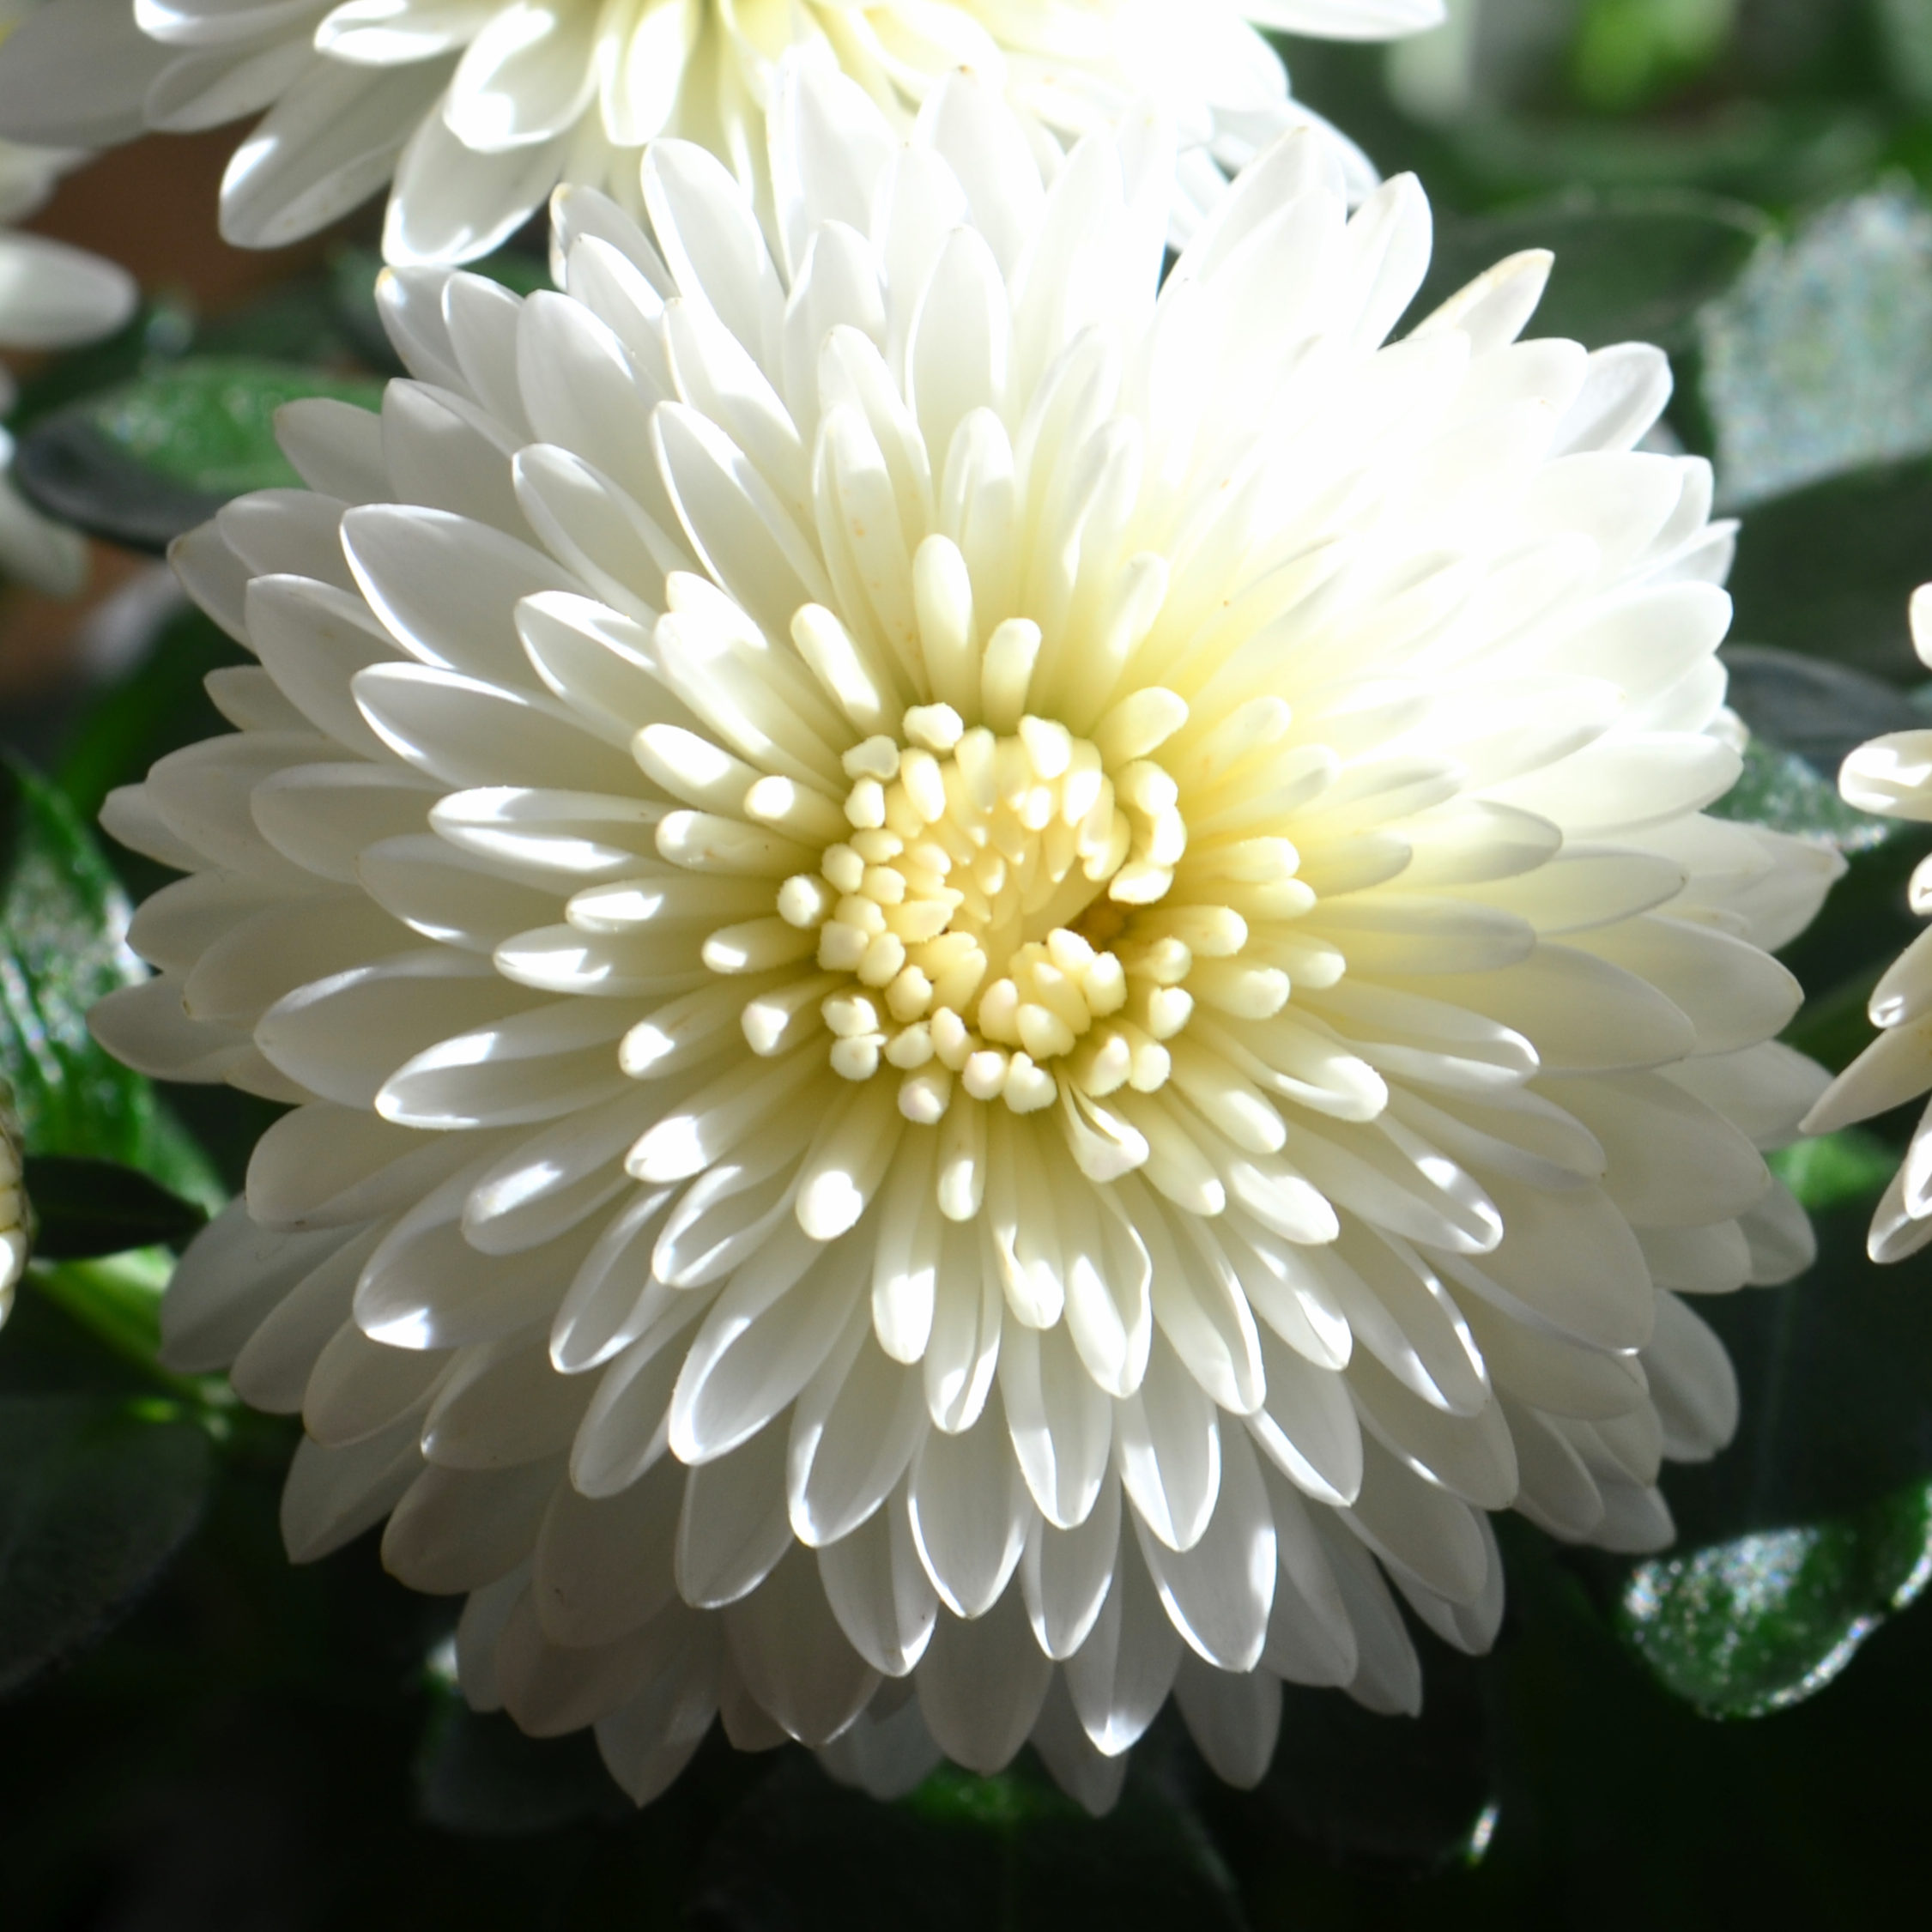 Chrysanthemum Cheryl 'Frosty White' - Mum from Hillcrest Nursery